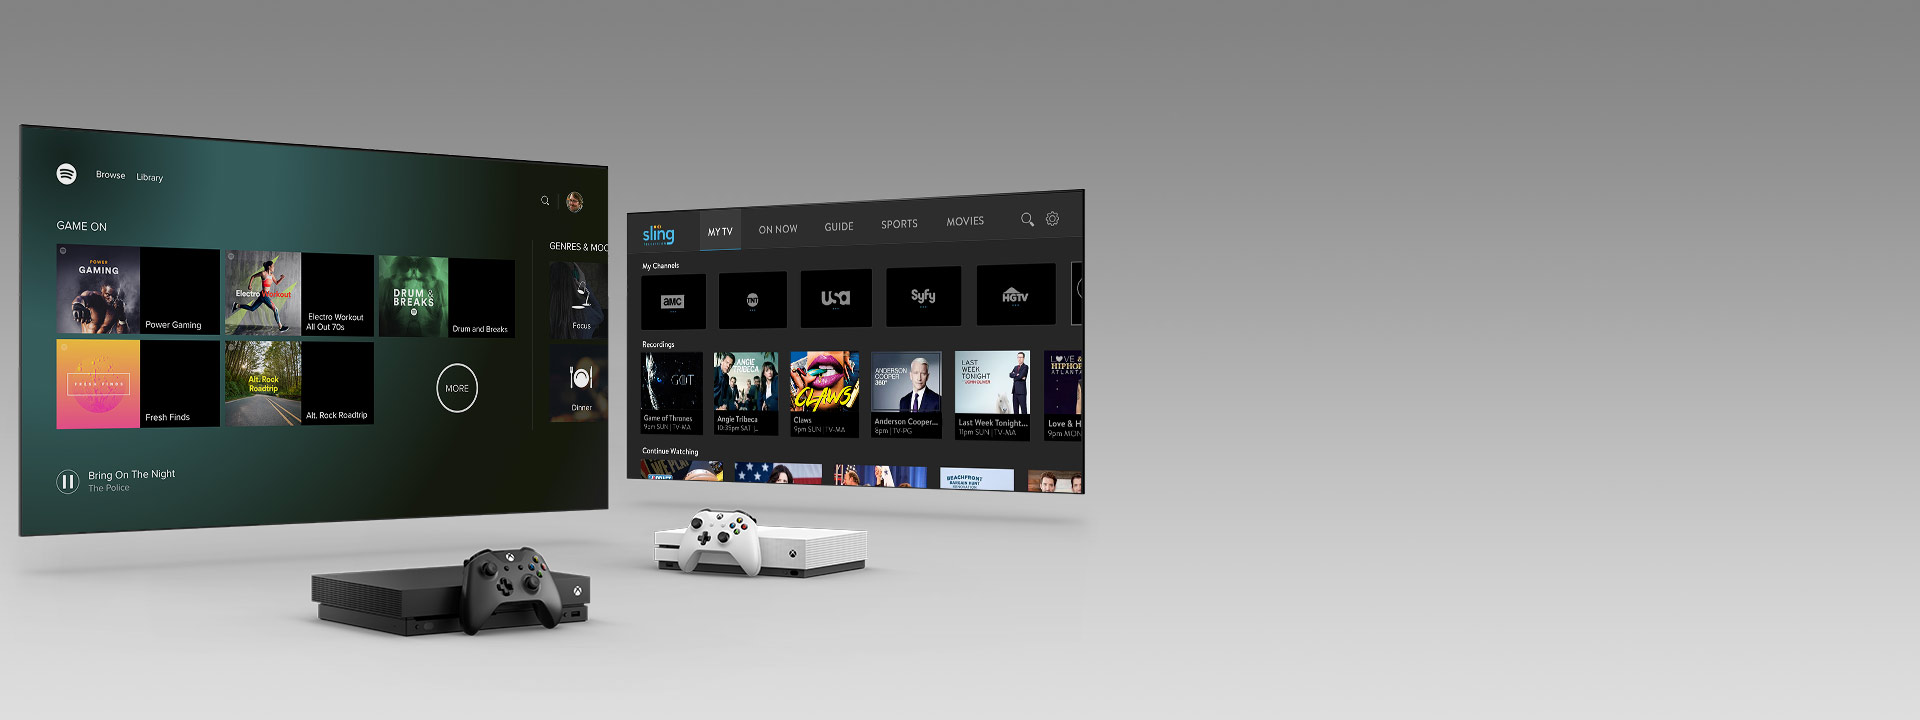 アプリのユーザー インターフェイスを表示した 2 つのテレビ画面の前にある Xbox Series X と Series S コントローラー。